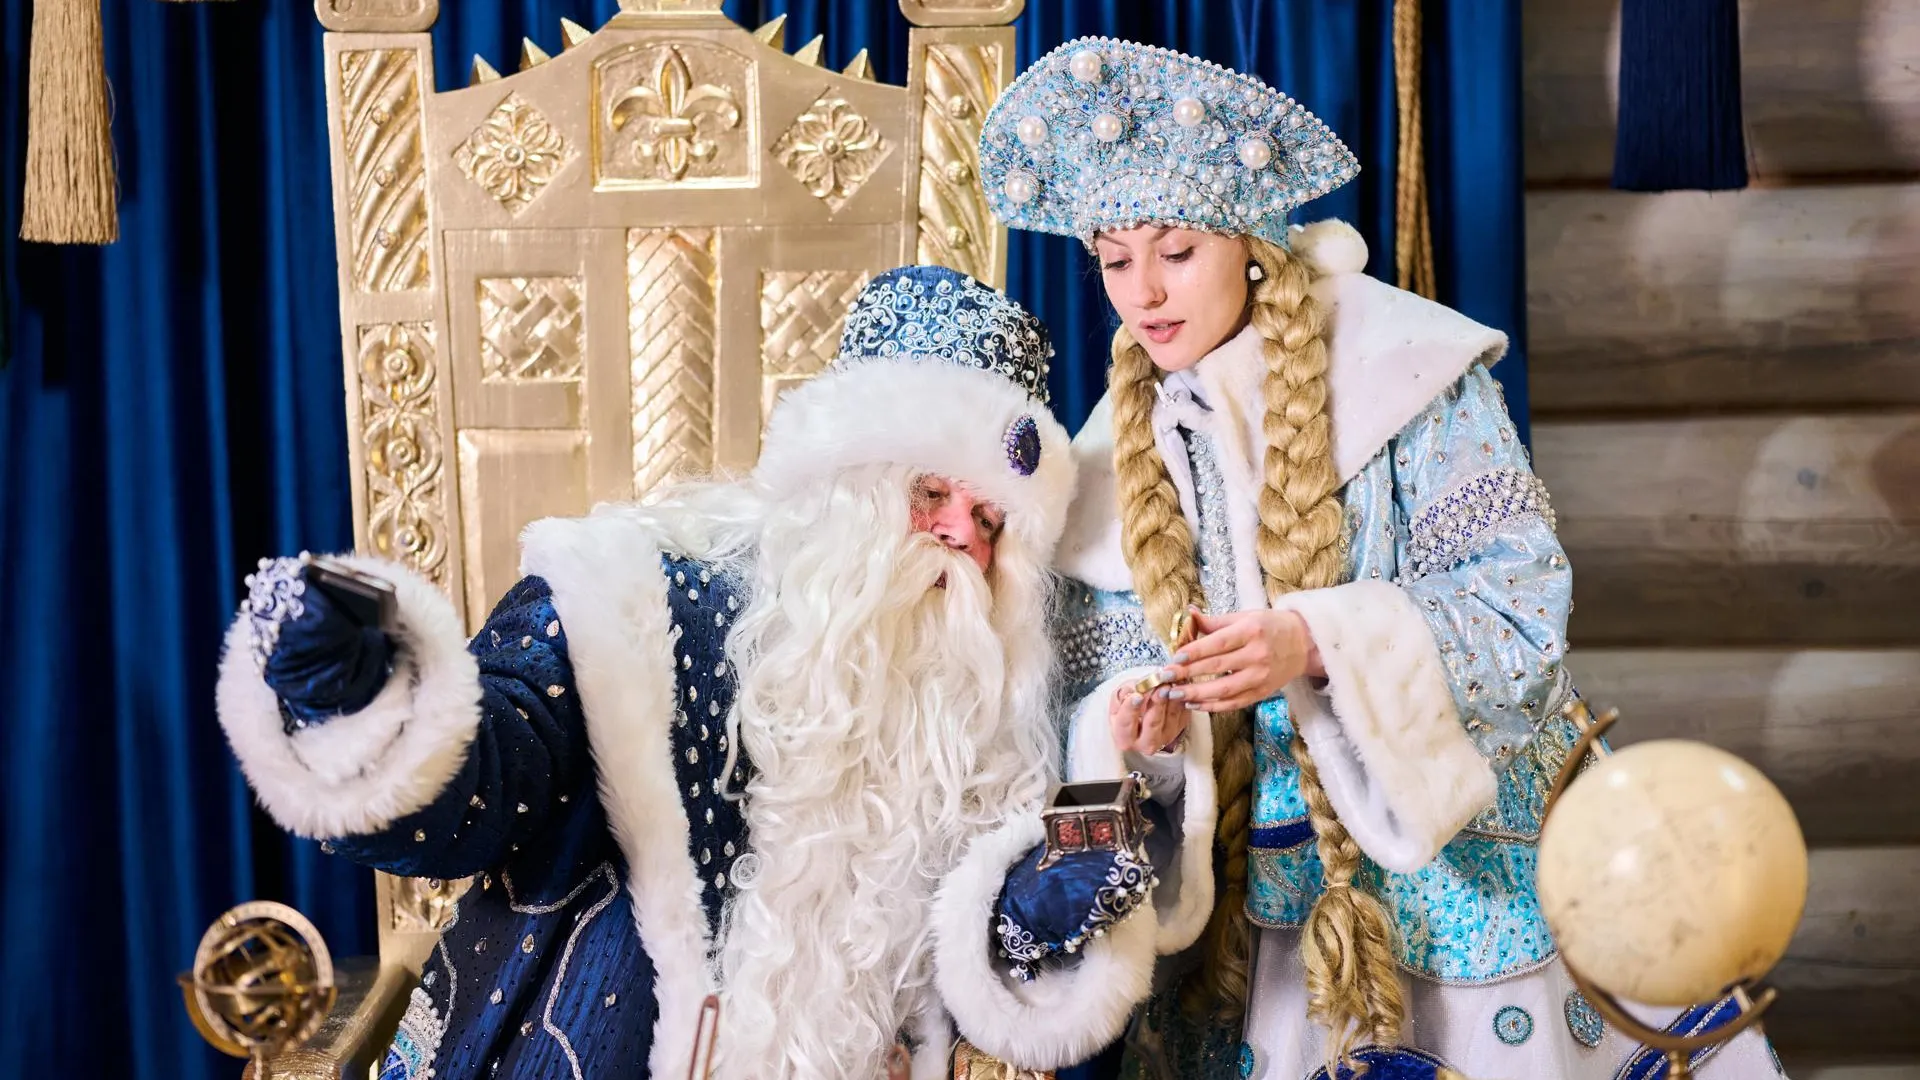 Старый Новый год отметят танцами и хороводами в Московской усадьбе Деда Мороза